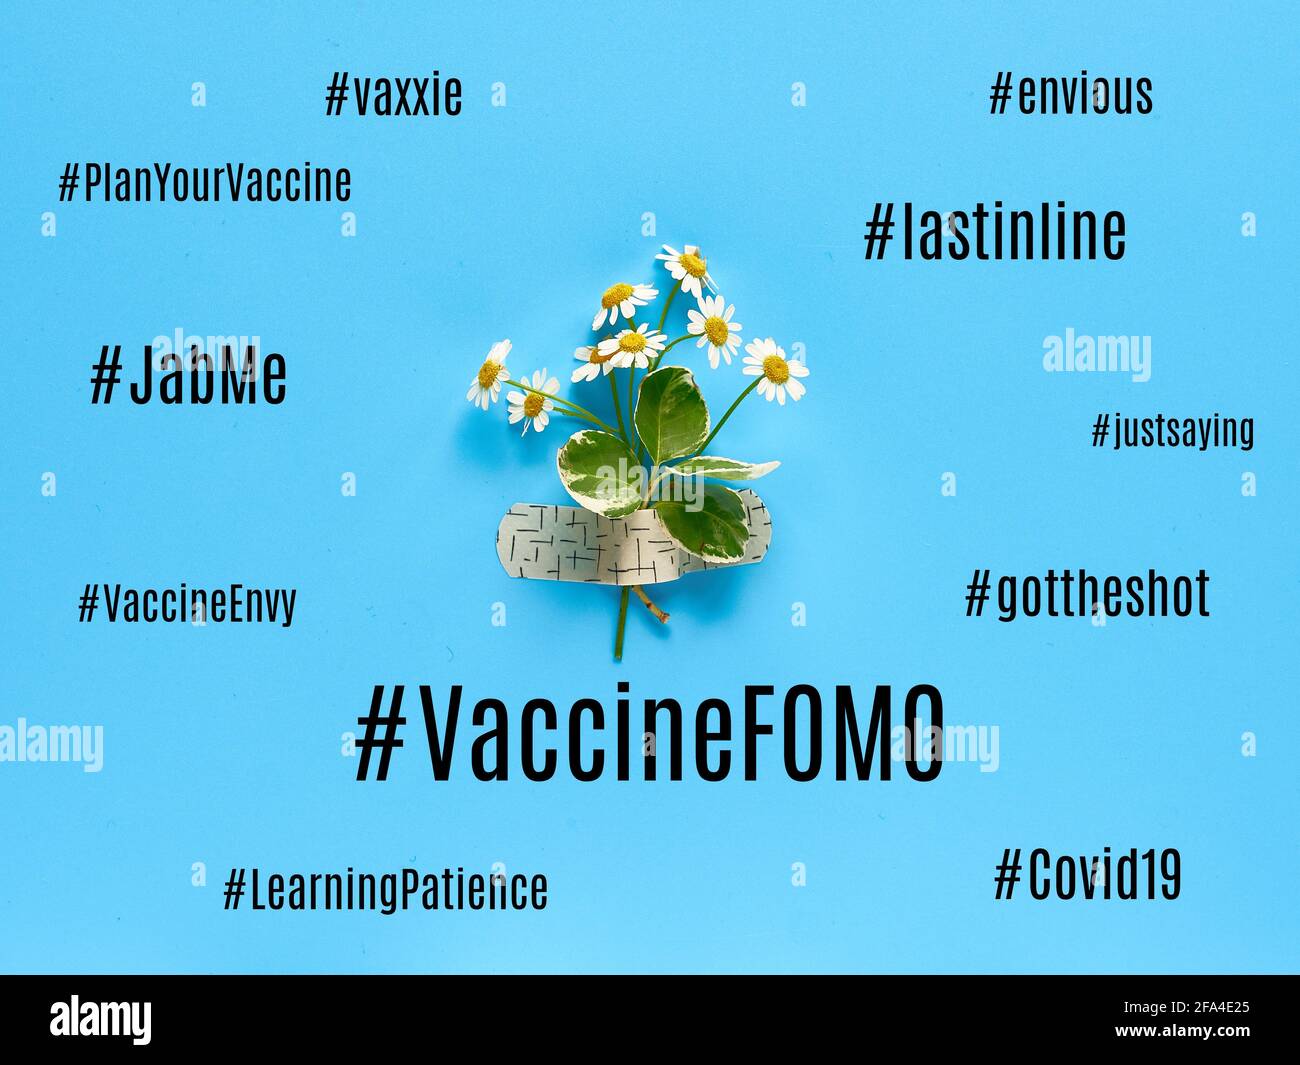 Hashtag für Impfstoff-FOMO. Angst davor, den Covid-Impfstoff zu verpassen. Unsicherheit während der Pandemien von Covid-19. Wolke verwandter Konzepte und Gefühle. Blaues Papier Stockfoto